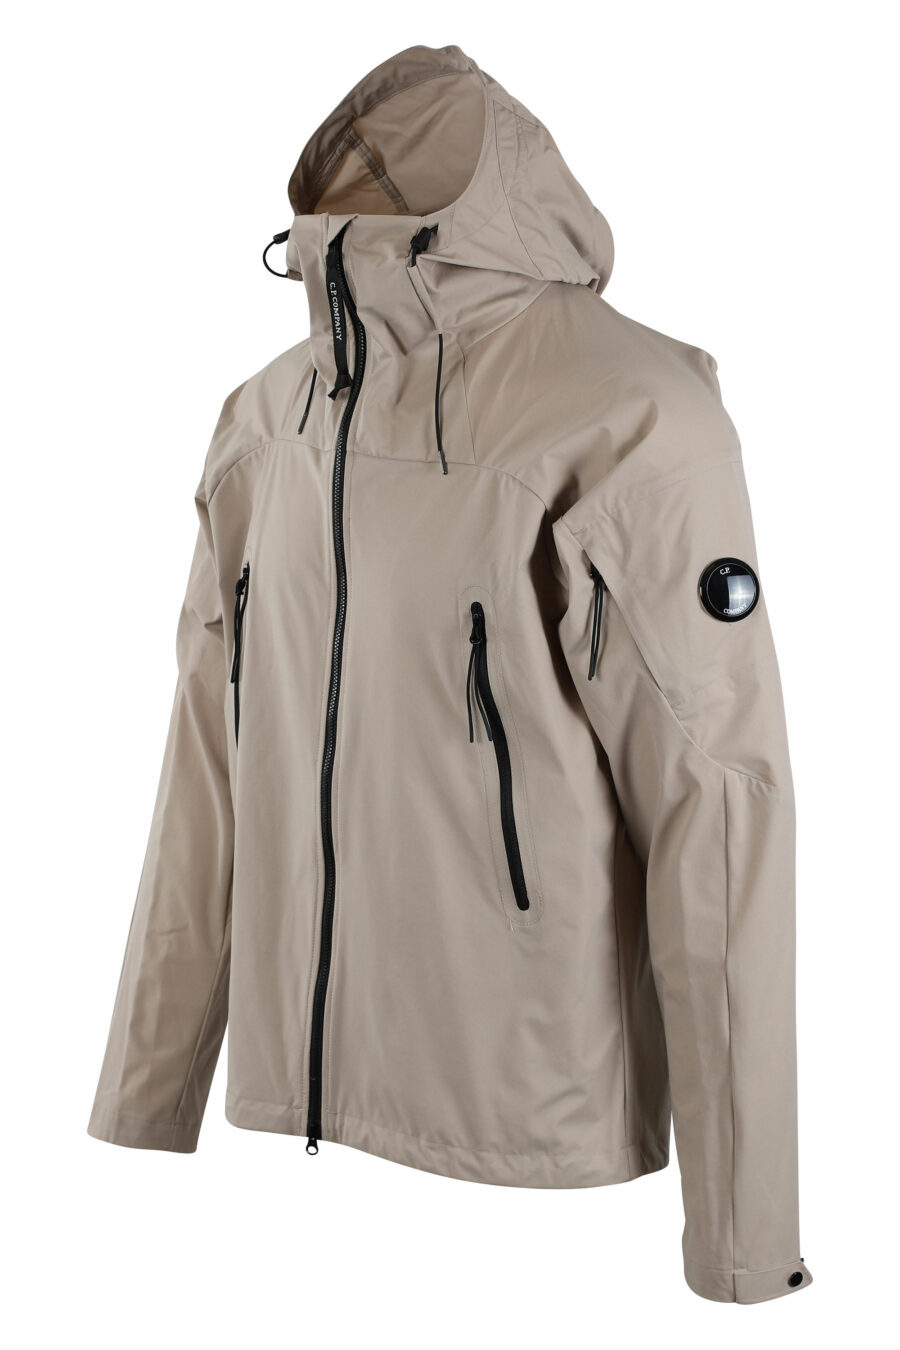 Beigefarbene "pro-tek" Jacke mit Kapuze und kreisförmigem Mini-Logo an der Seite - IMG 2668